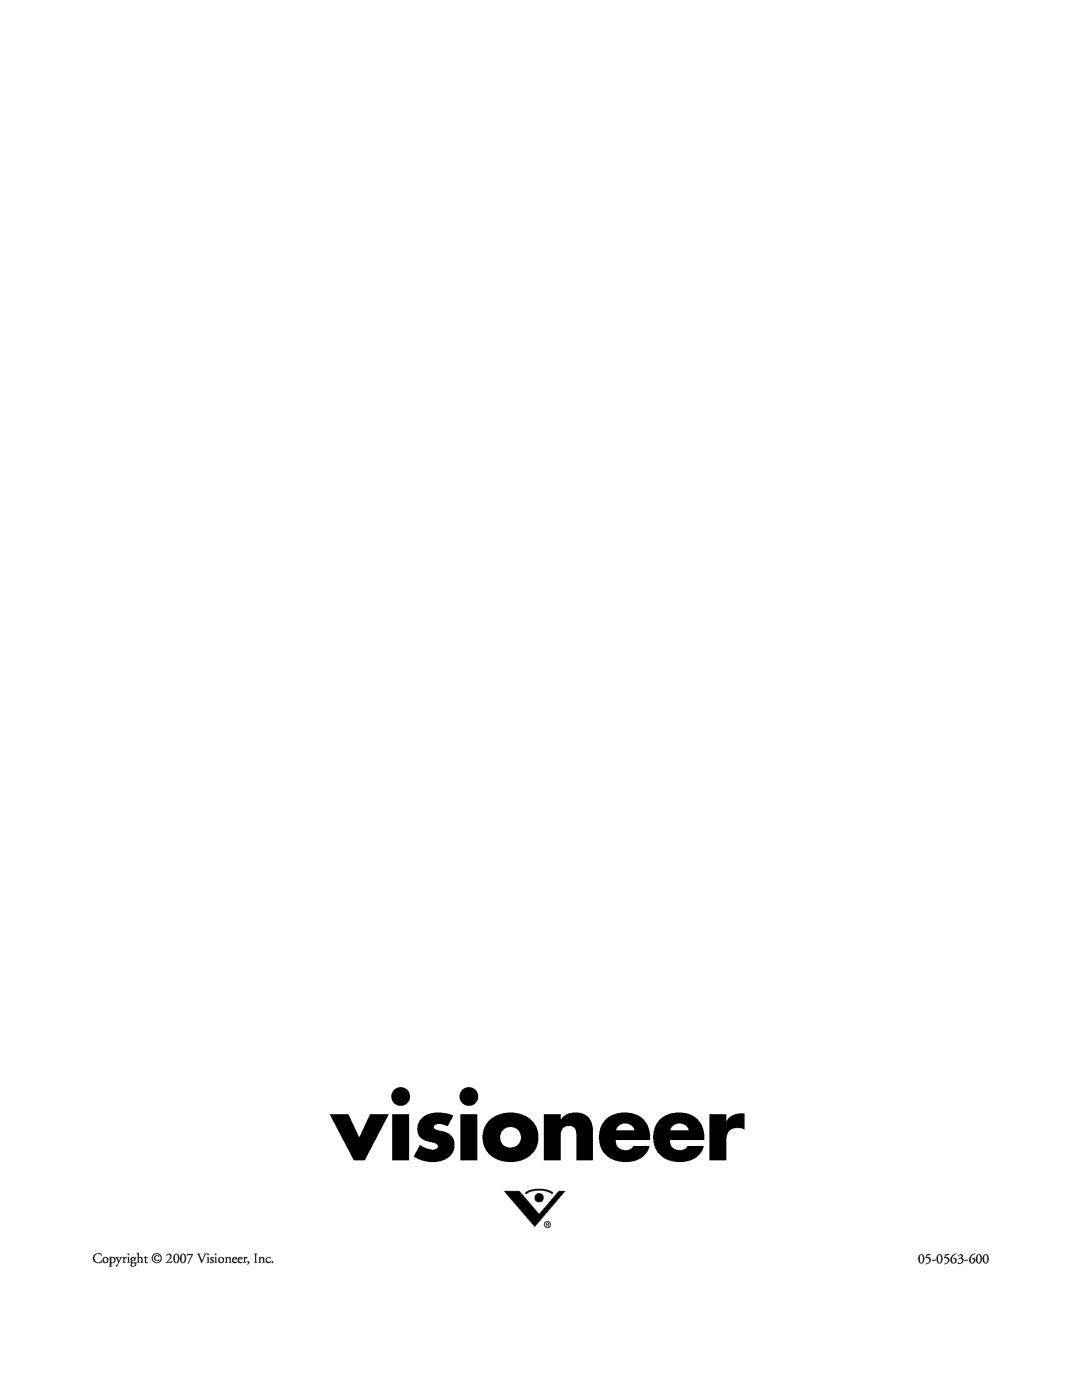 Visioneer 9750 manual visioneer, Copyright 2007 Visioneer, Inc, 05-0563-600 